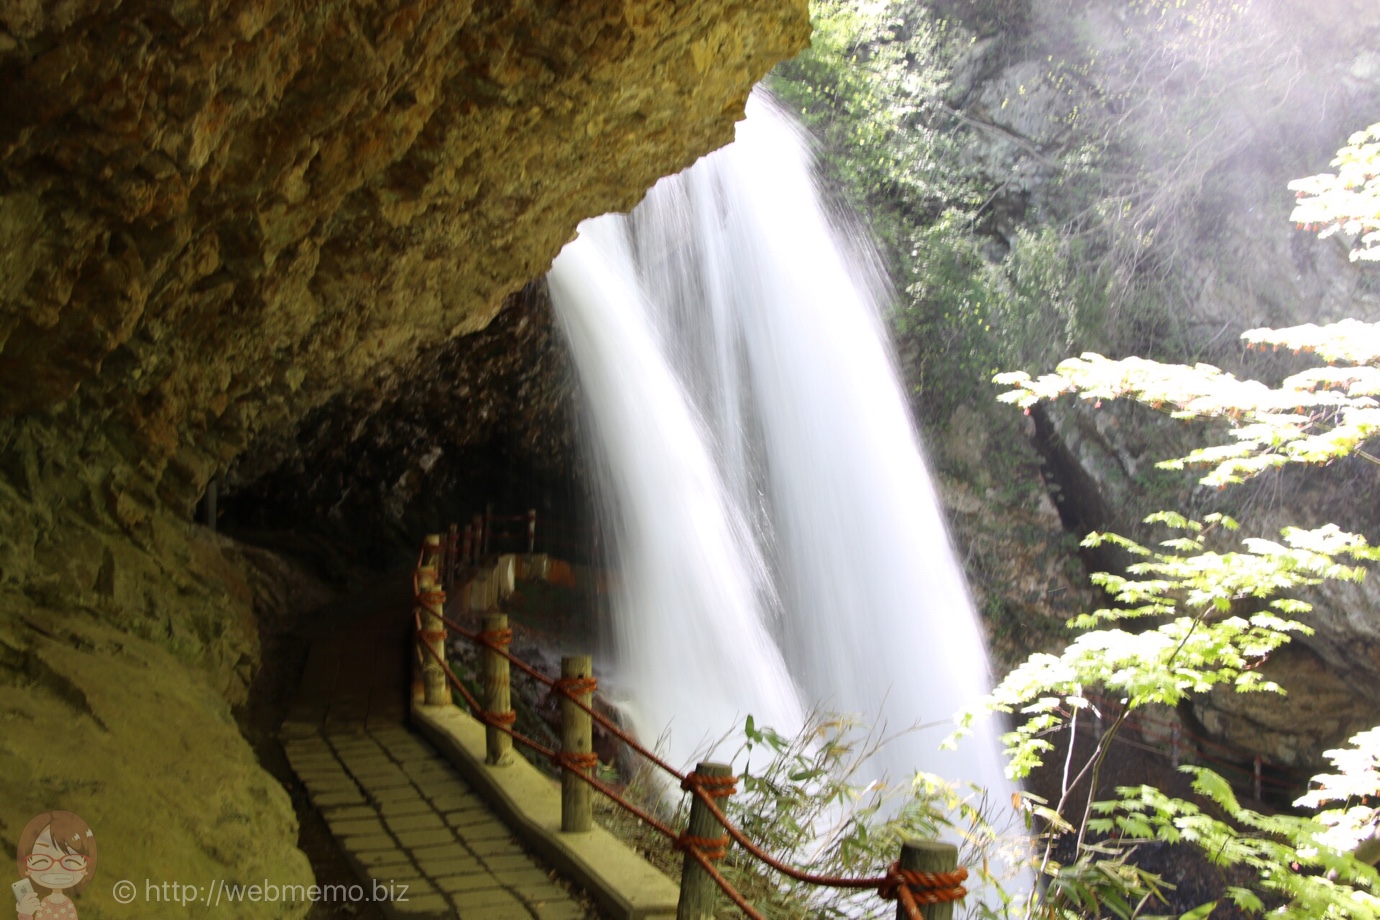 長野観光「雷滝」は至近距離で滝を体感できる滝初心者も安心の豪快・裏見滝